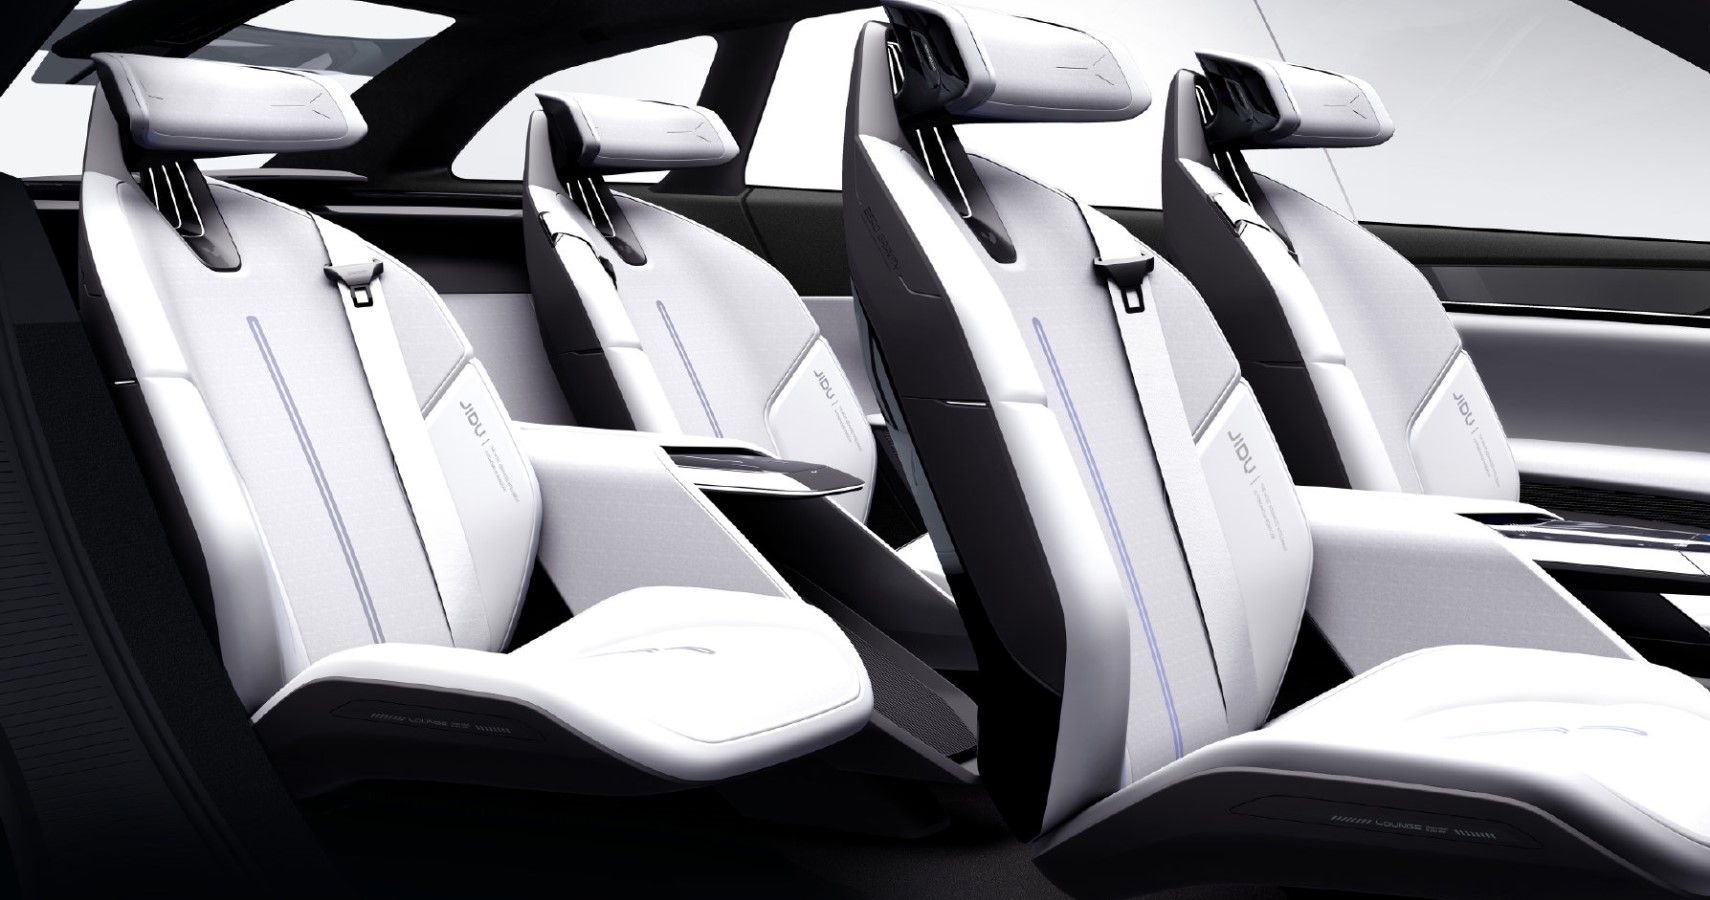 JIDU ROBO-01 EV Concept seating layout view